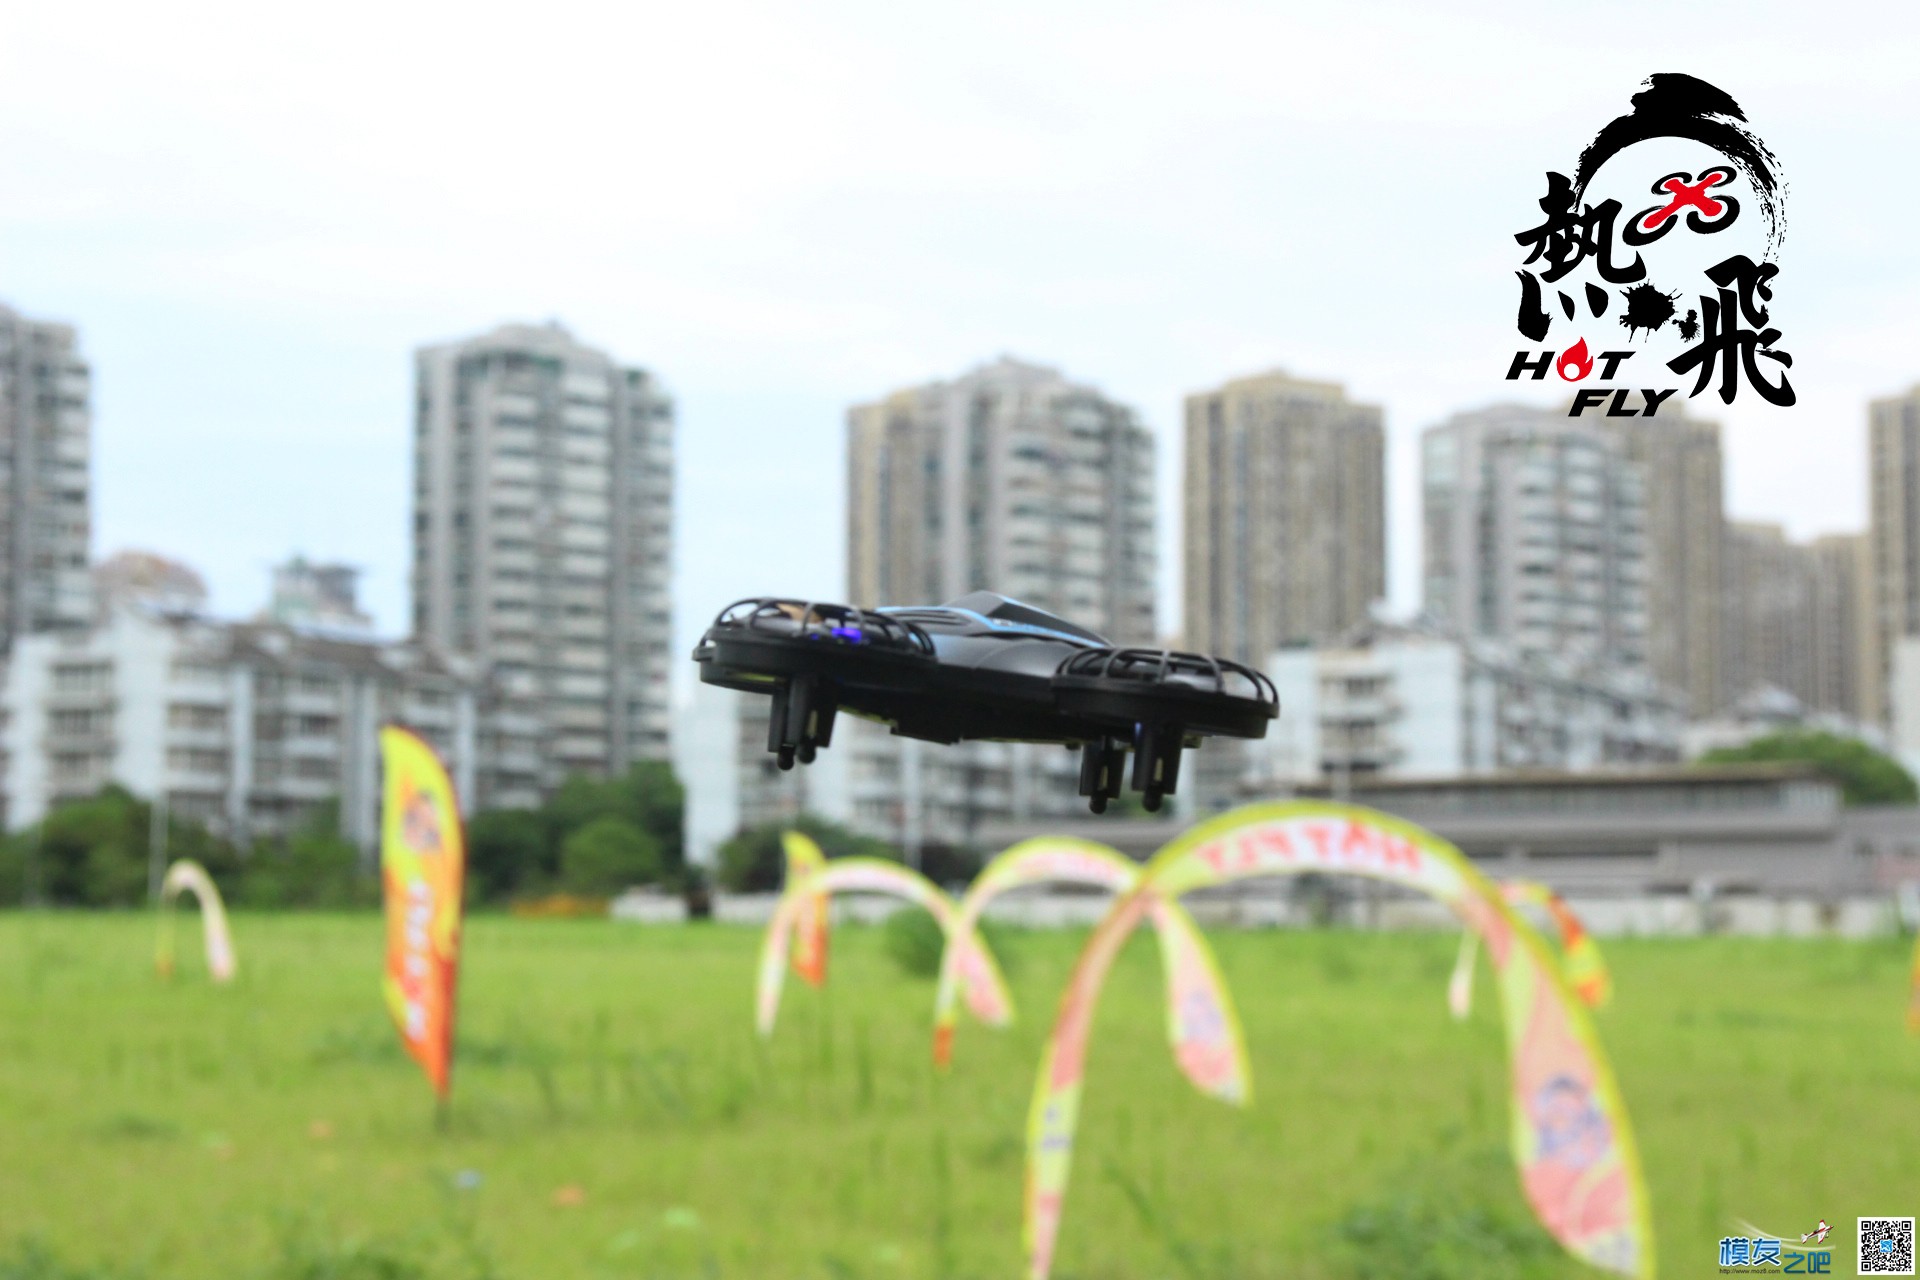 热飞视频+图片|7.9无人机总动员现场曝光各种最新机型 无人机 作者:杭州大碗 1137 